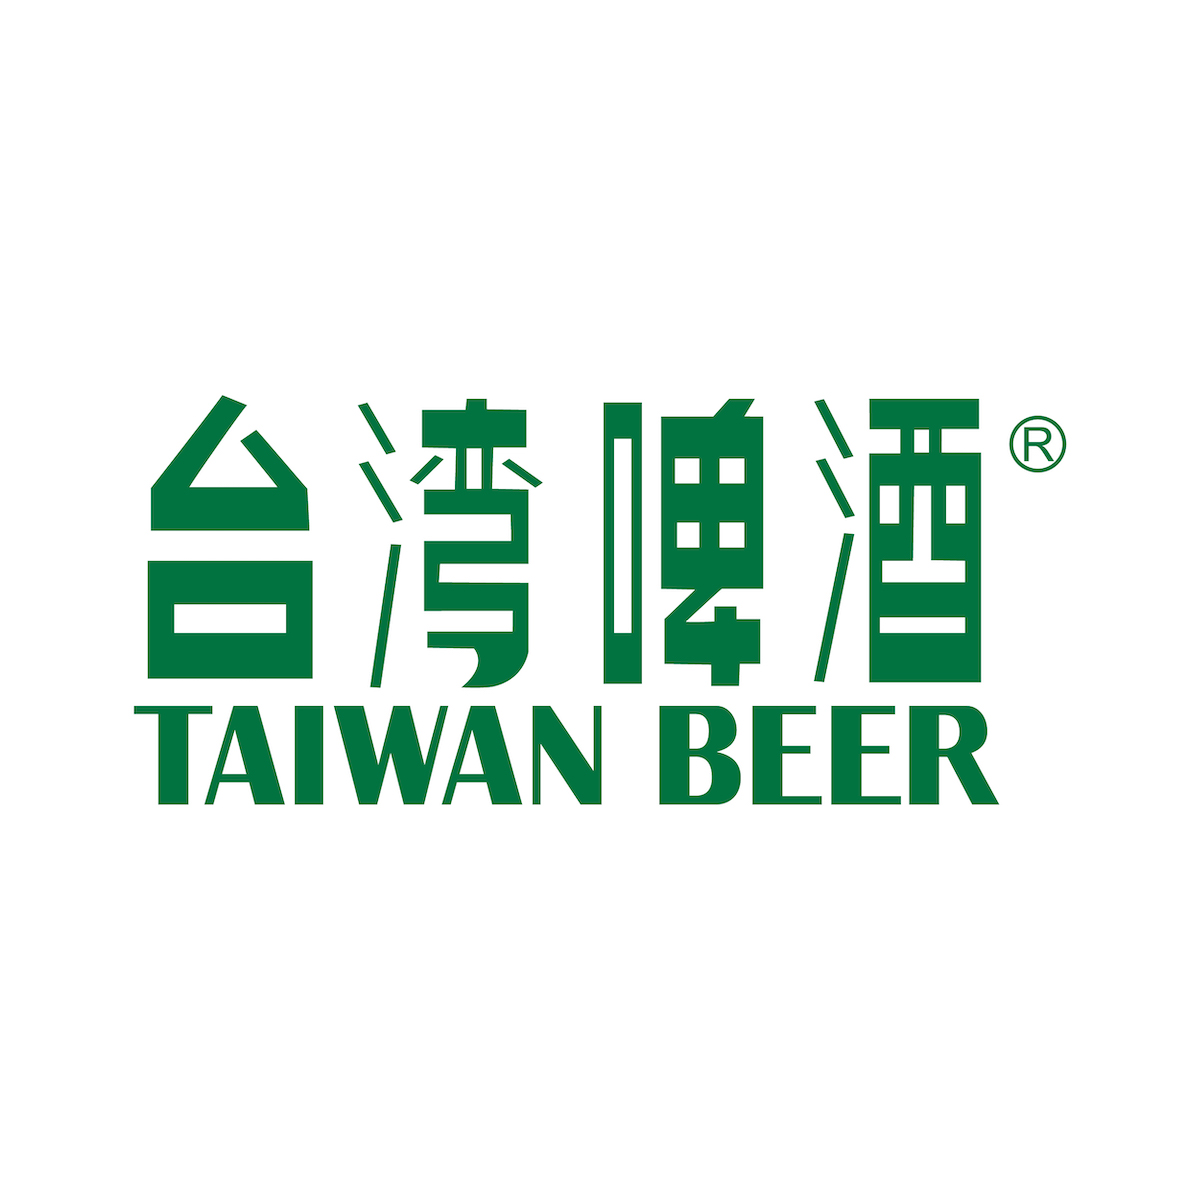 樂活報名網 - 2021桃城星空夜跑嘉年華-台灣啤酒